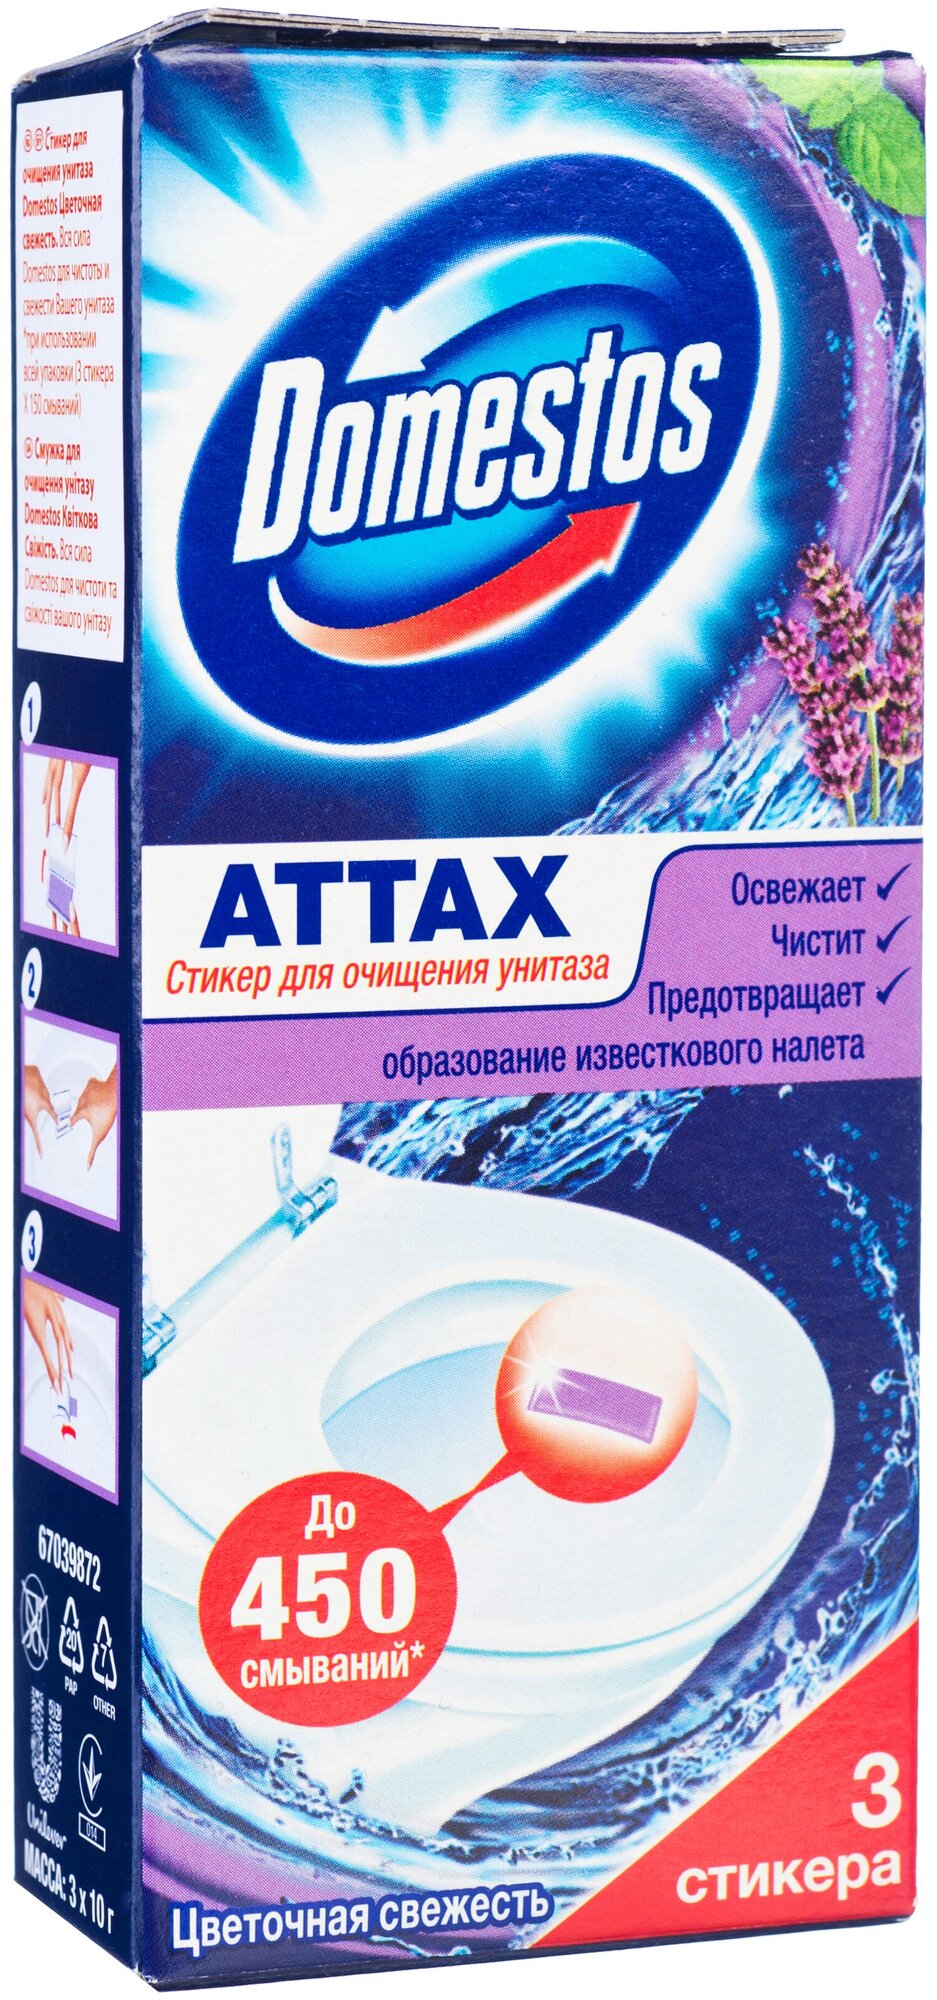 Domestos Attax, антибактериальный стикер для очищения унитаза, Цветочная свежесть 3 шт. х 10 гр